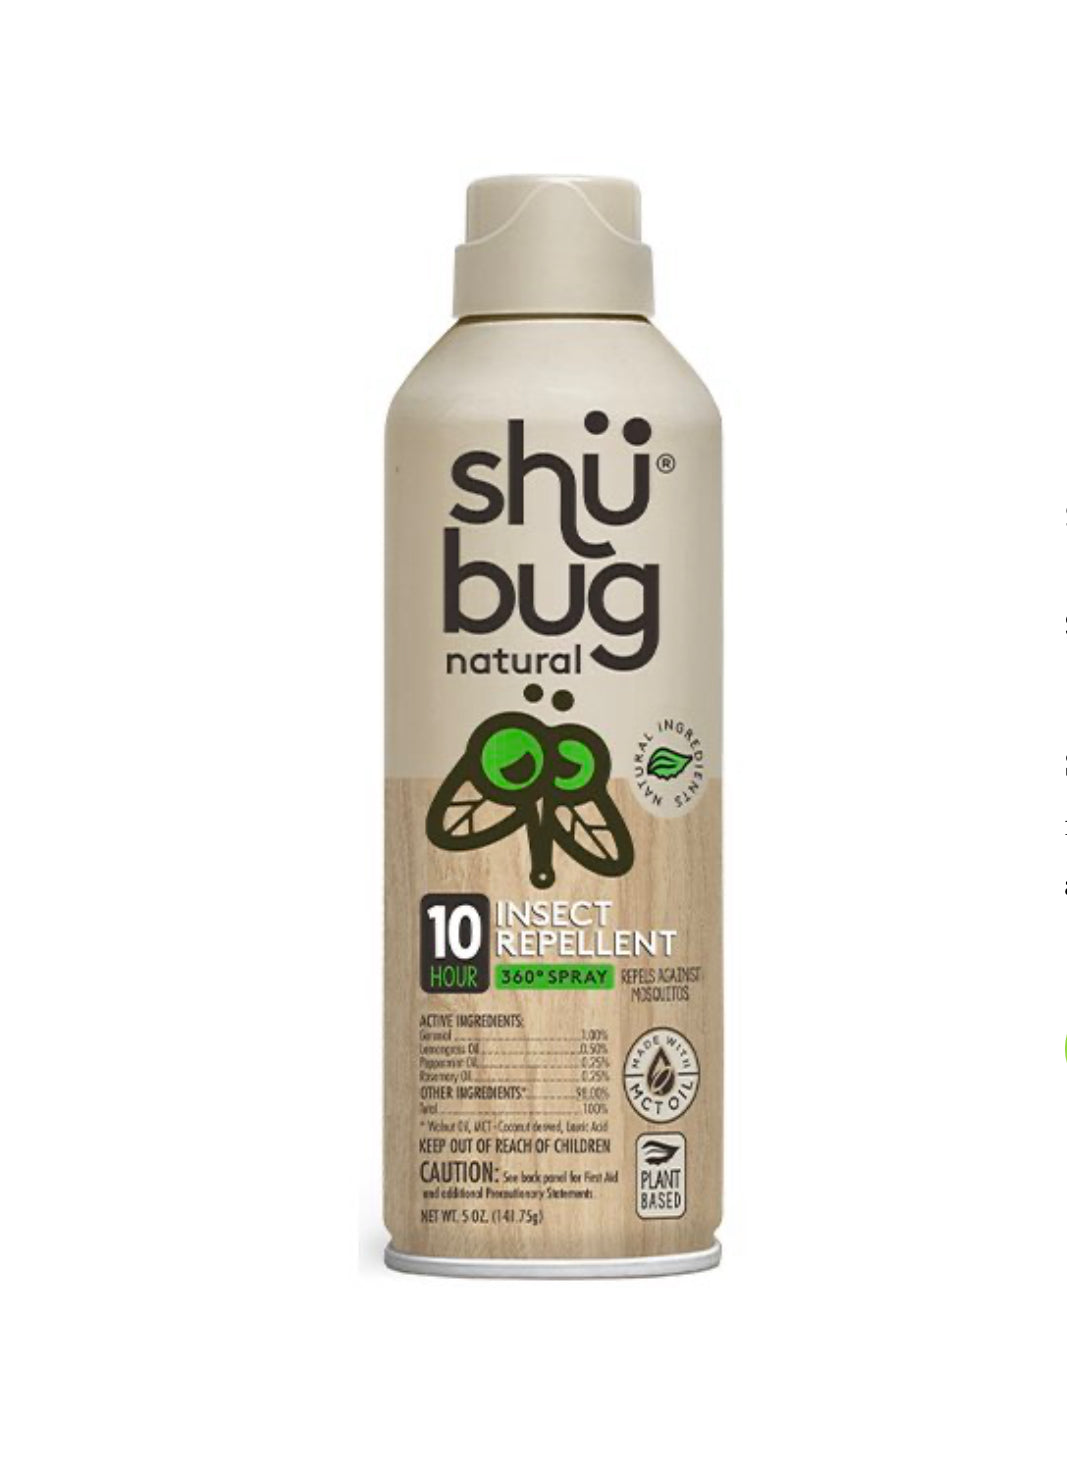 Shübug Natural Insect Repellent 360 Spray